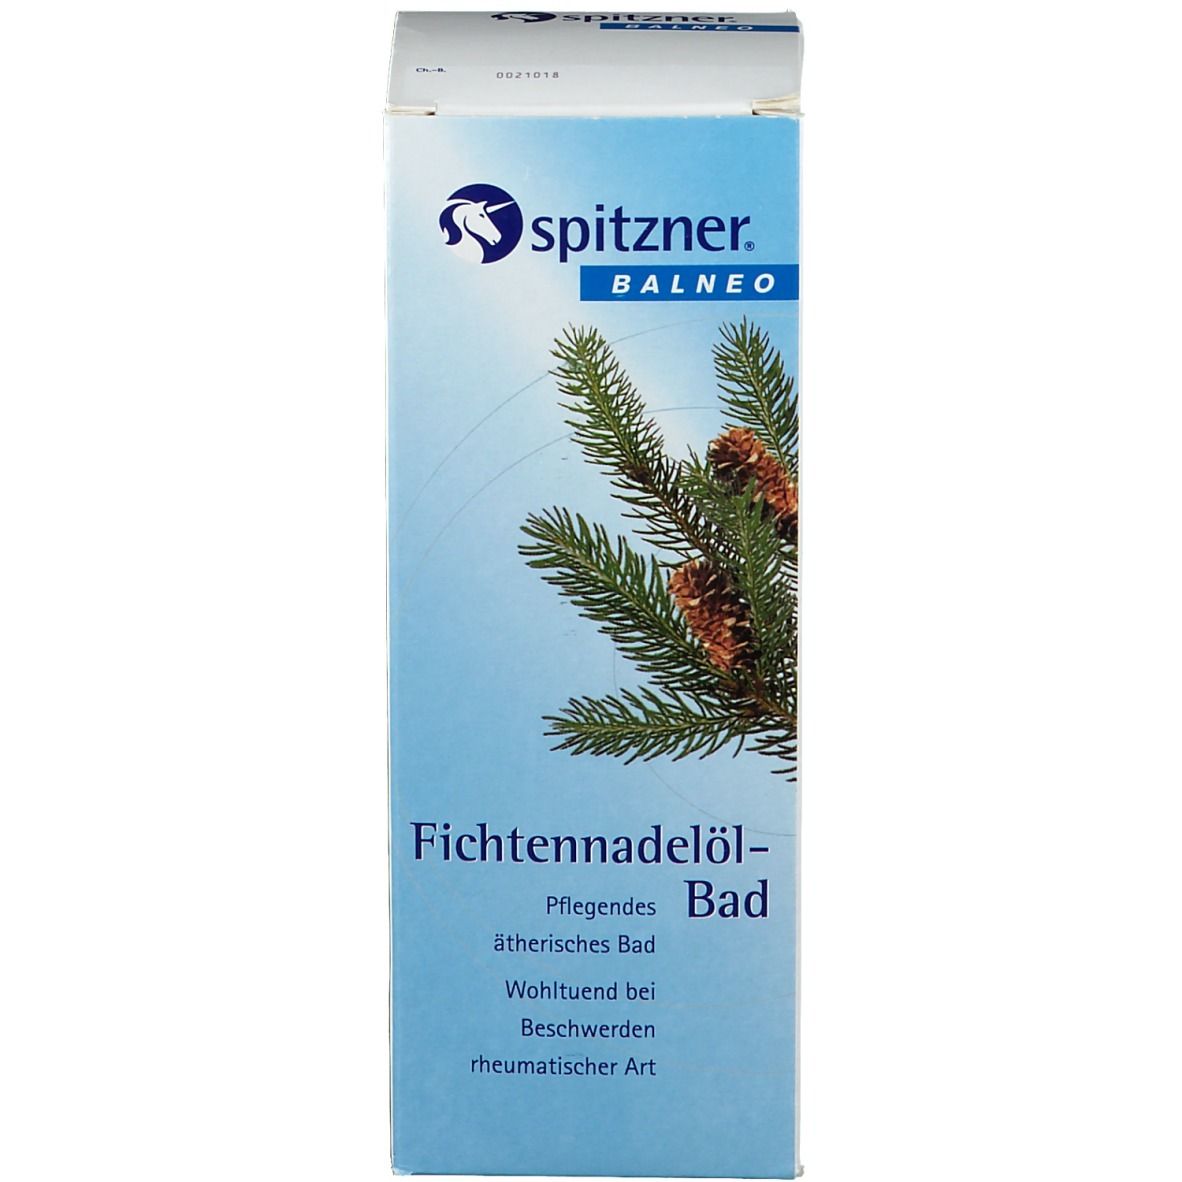 Spitzner® Balneo Fichtennadelöl-Bad